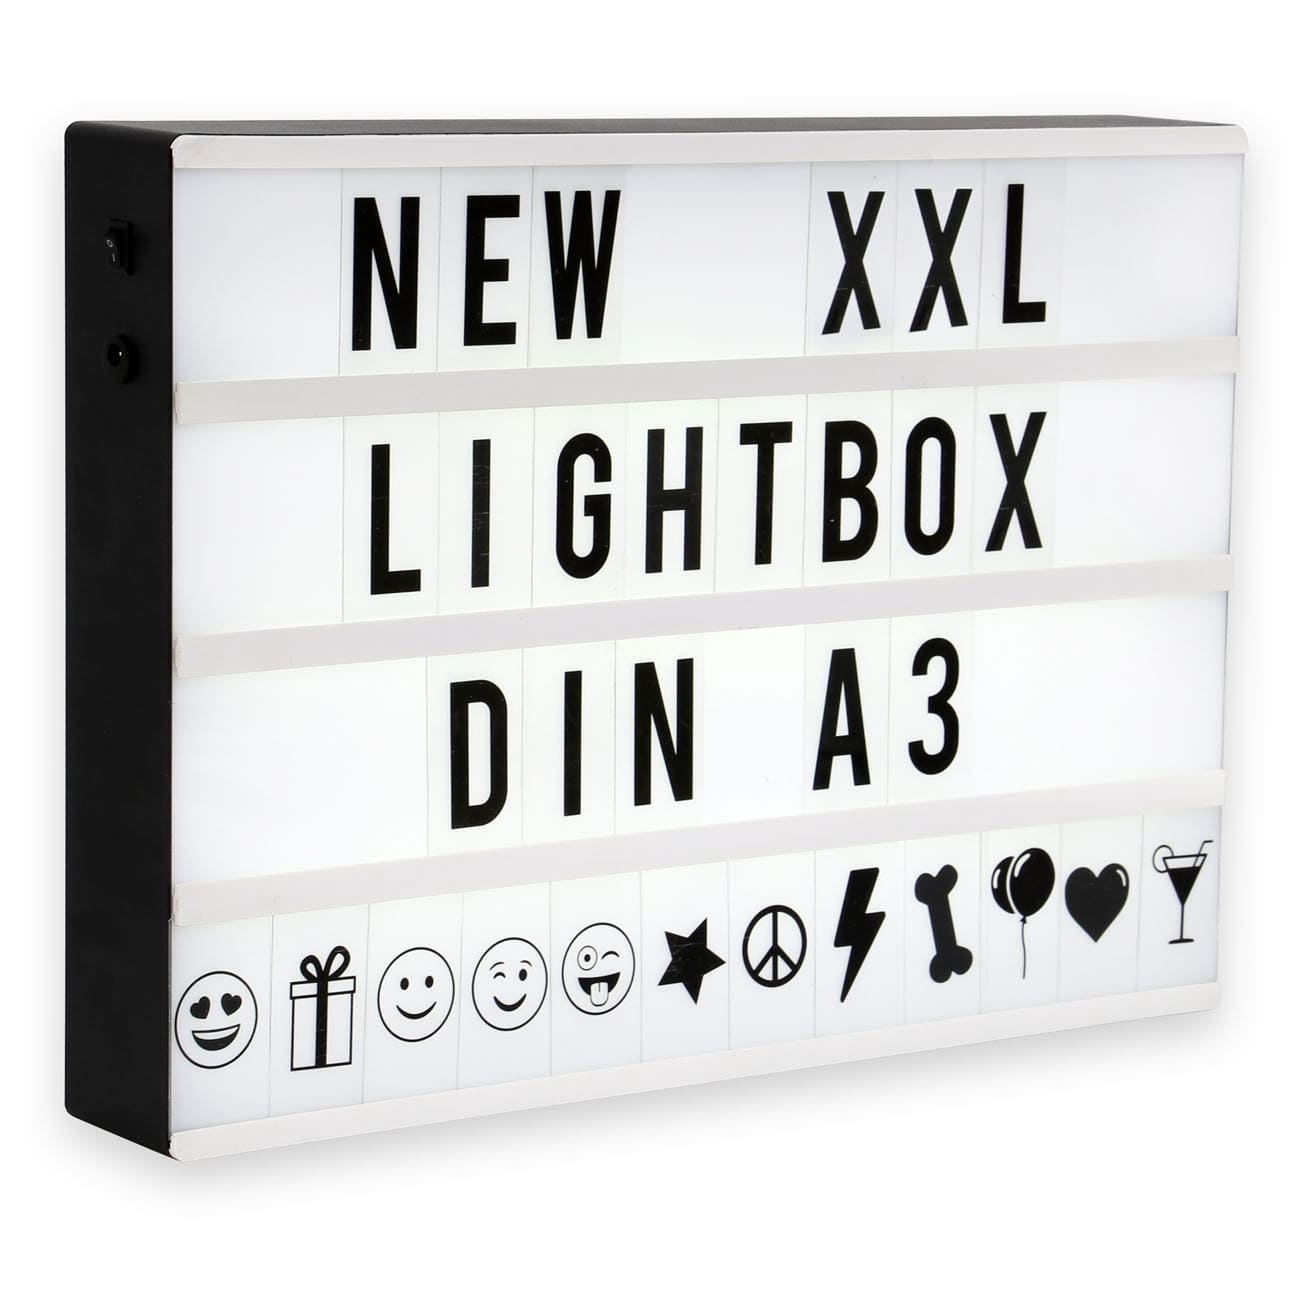 LED Lichtbox mit 120 Buchstaben - DIN A3 - Lightbox 42x30x5,6cm inkl USB-Kabel 5V Ein-/Aus-Schalter 4W kaltweißes Licht | schwarz - 1